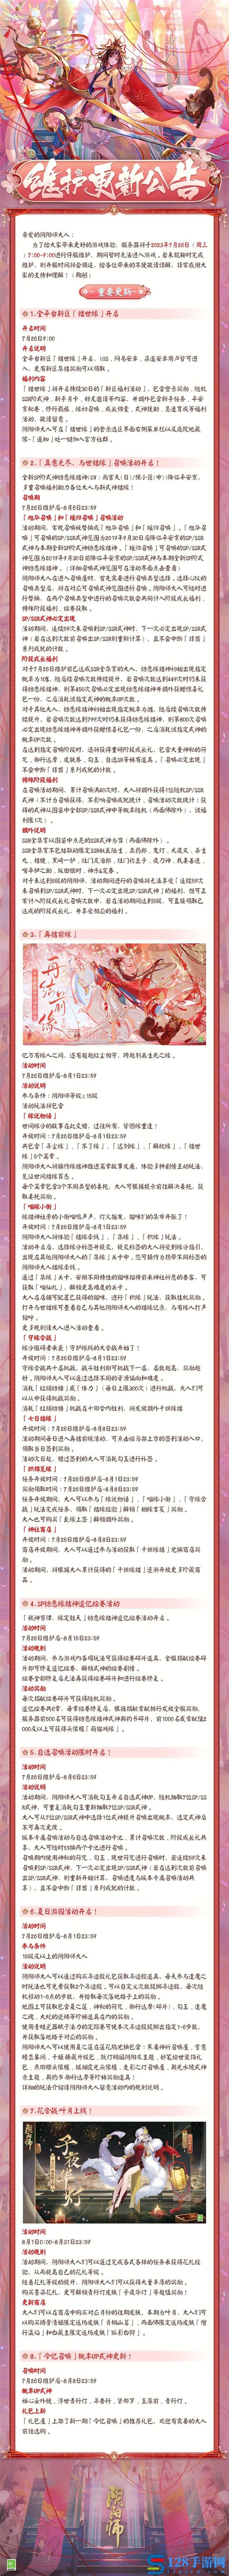 阴阳师7月26日更新公告有哪些内容